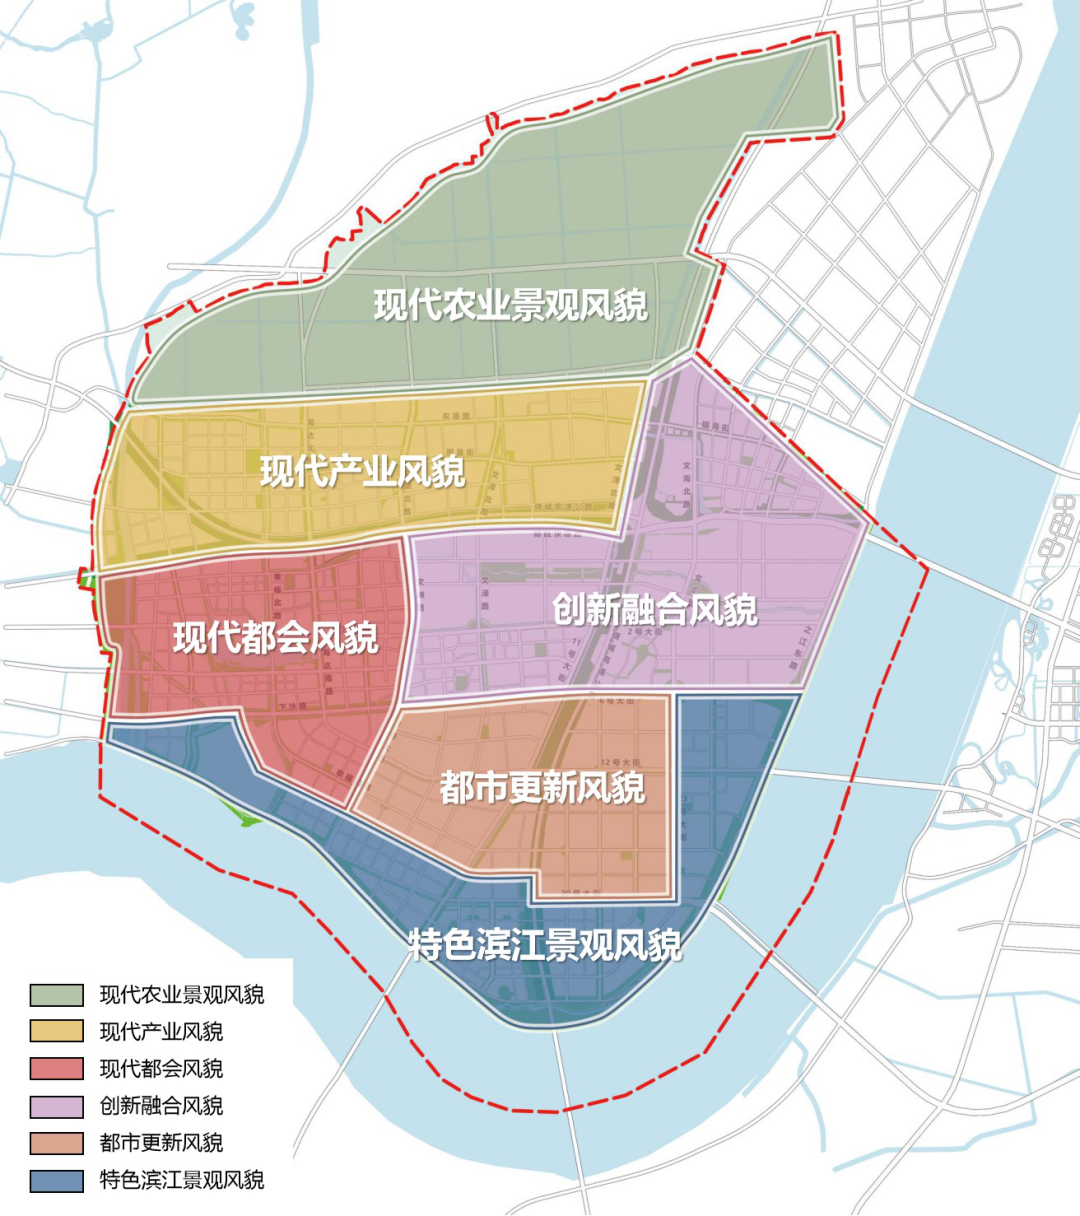 3分钟看懂杭州城市版图！十区118个板块精细划分地图来了 - 要闻 -杭州乐居网